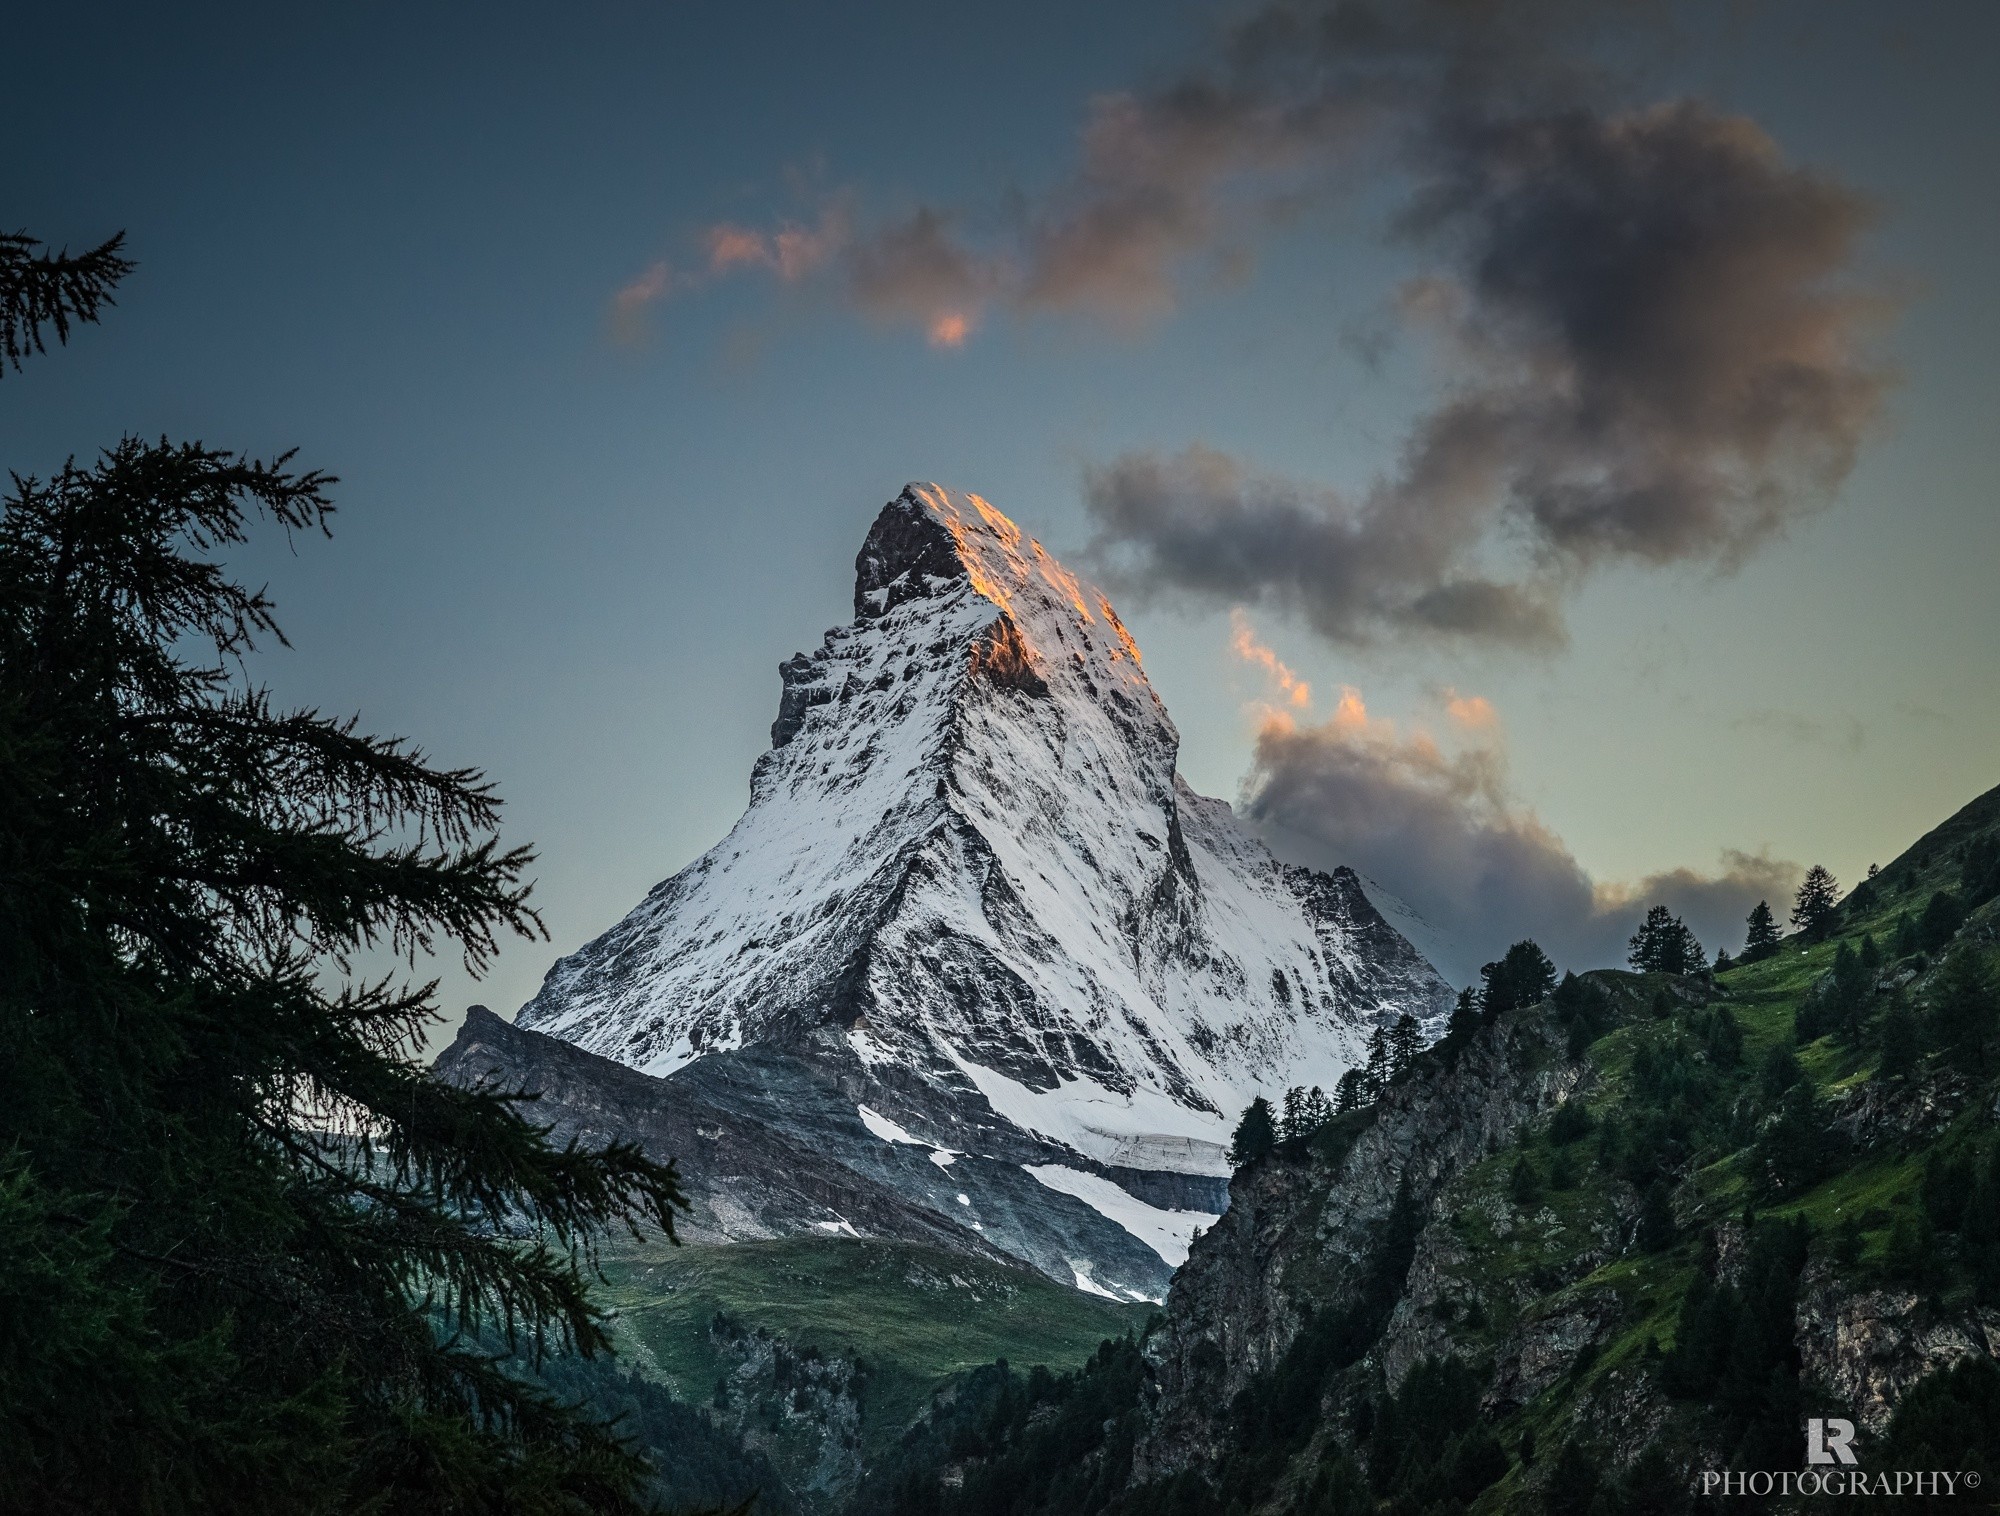 General 2000x1516 nature landscape mountains Matterhorn Switzerland watermarked